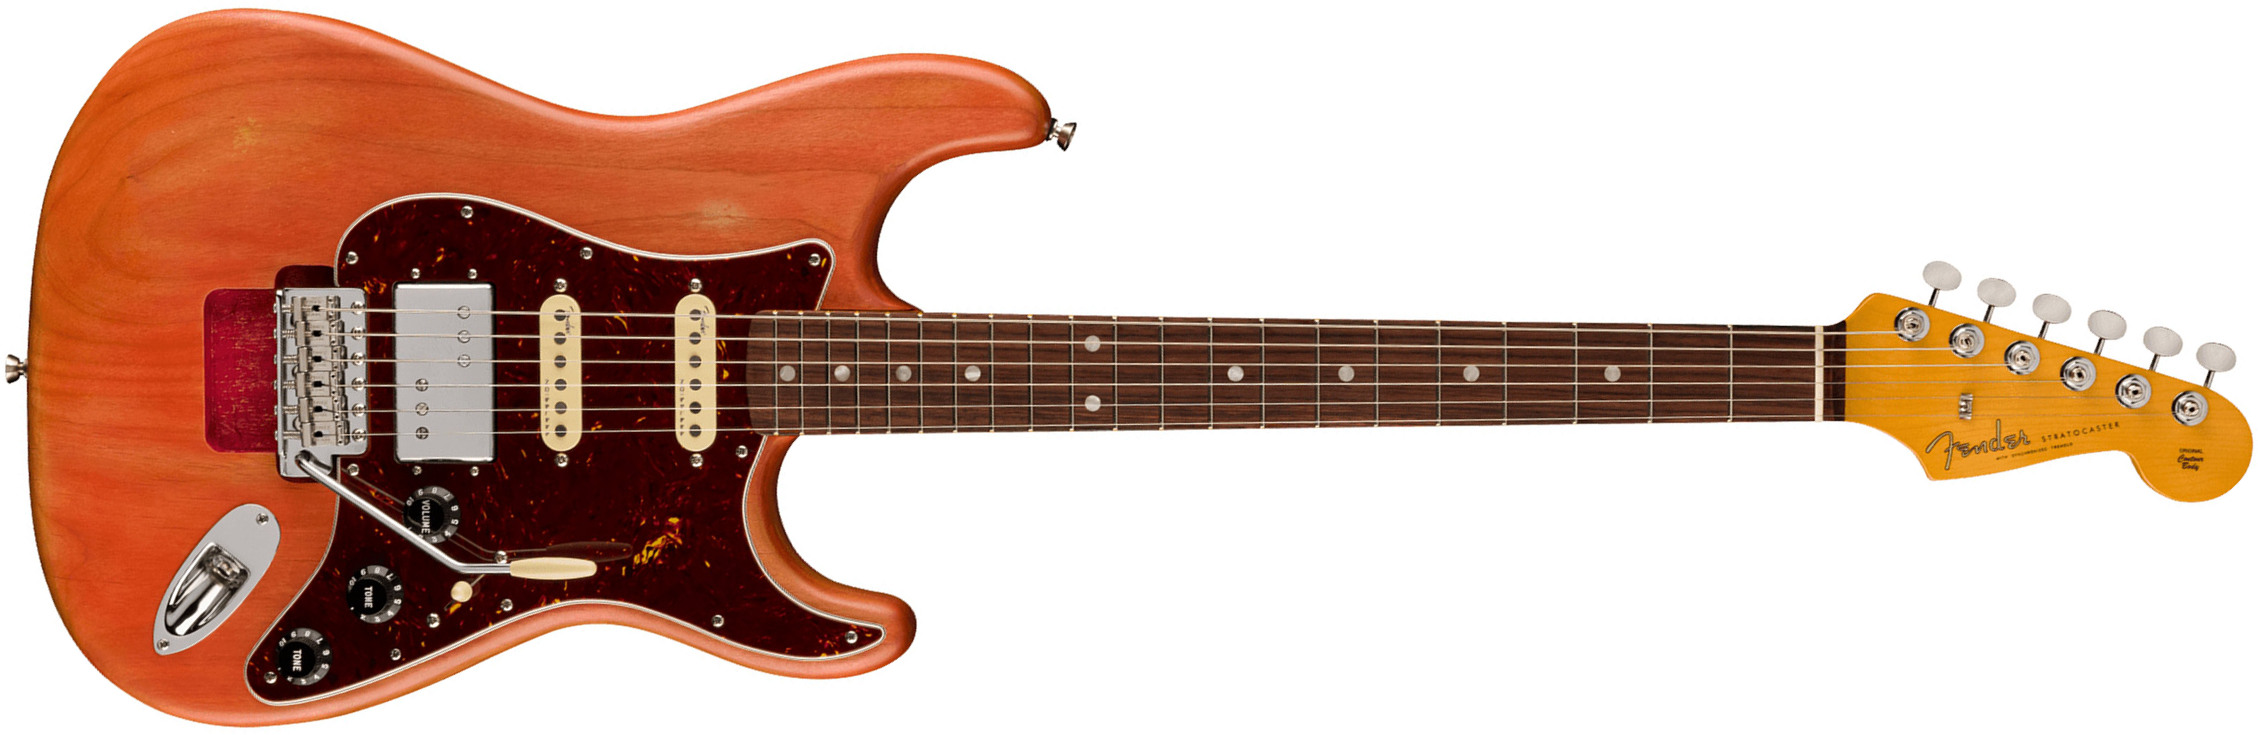 Fender Michael Landau Strat Coma Stories Usa Signature Hss Trem Rw - Coma Red - Guitare Électrique Forme Str - Main picture